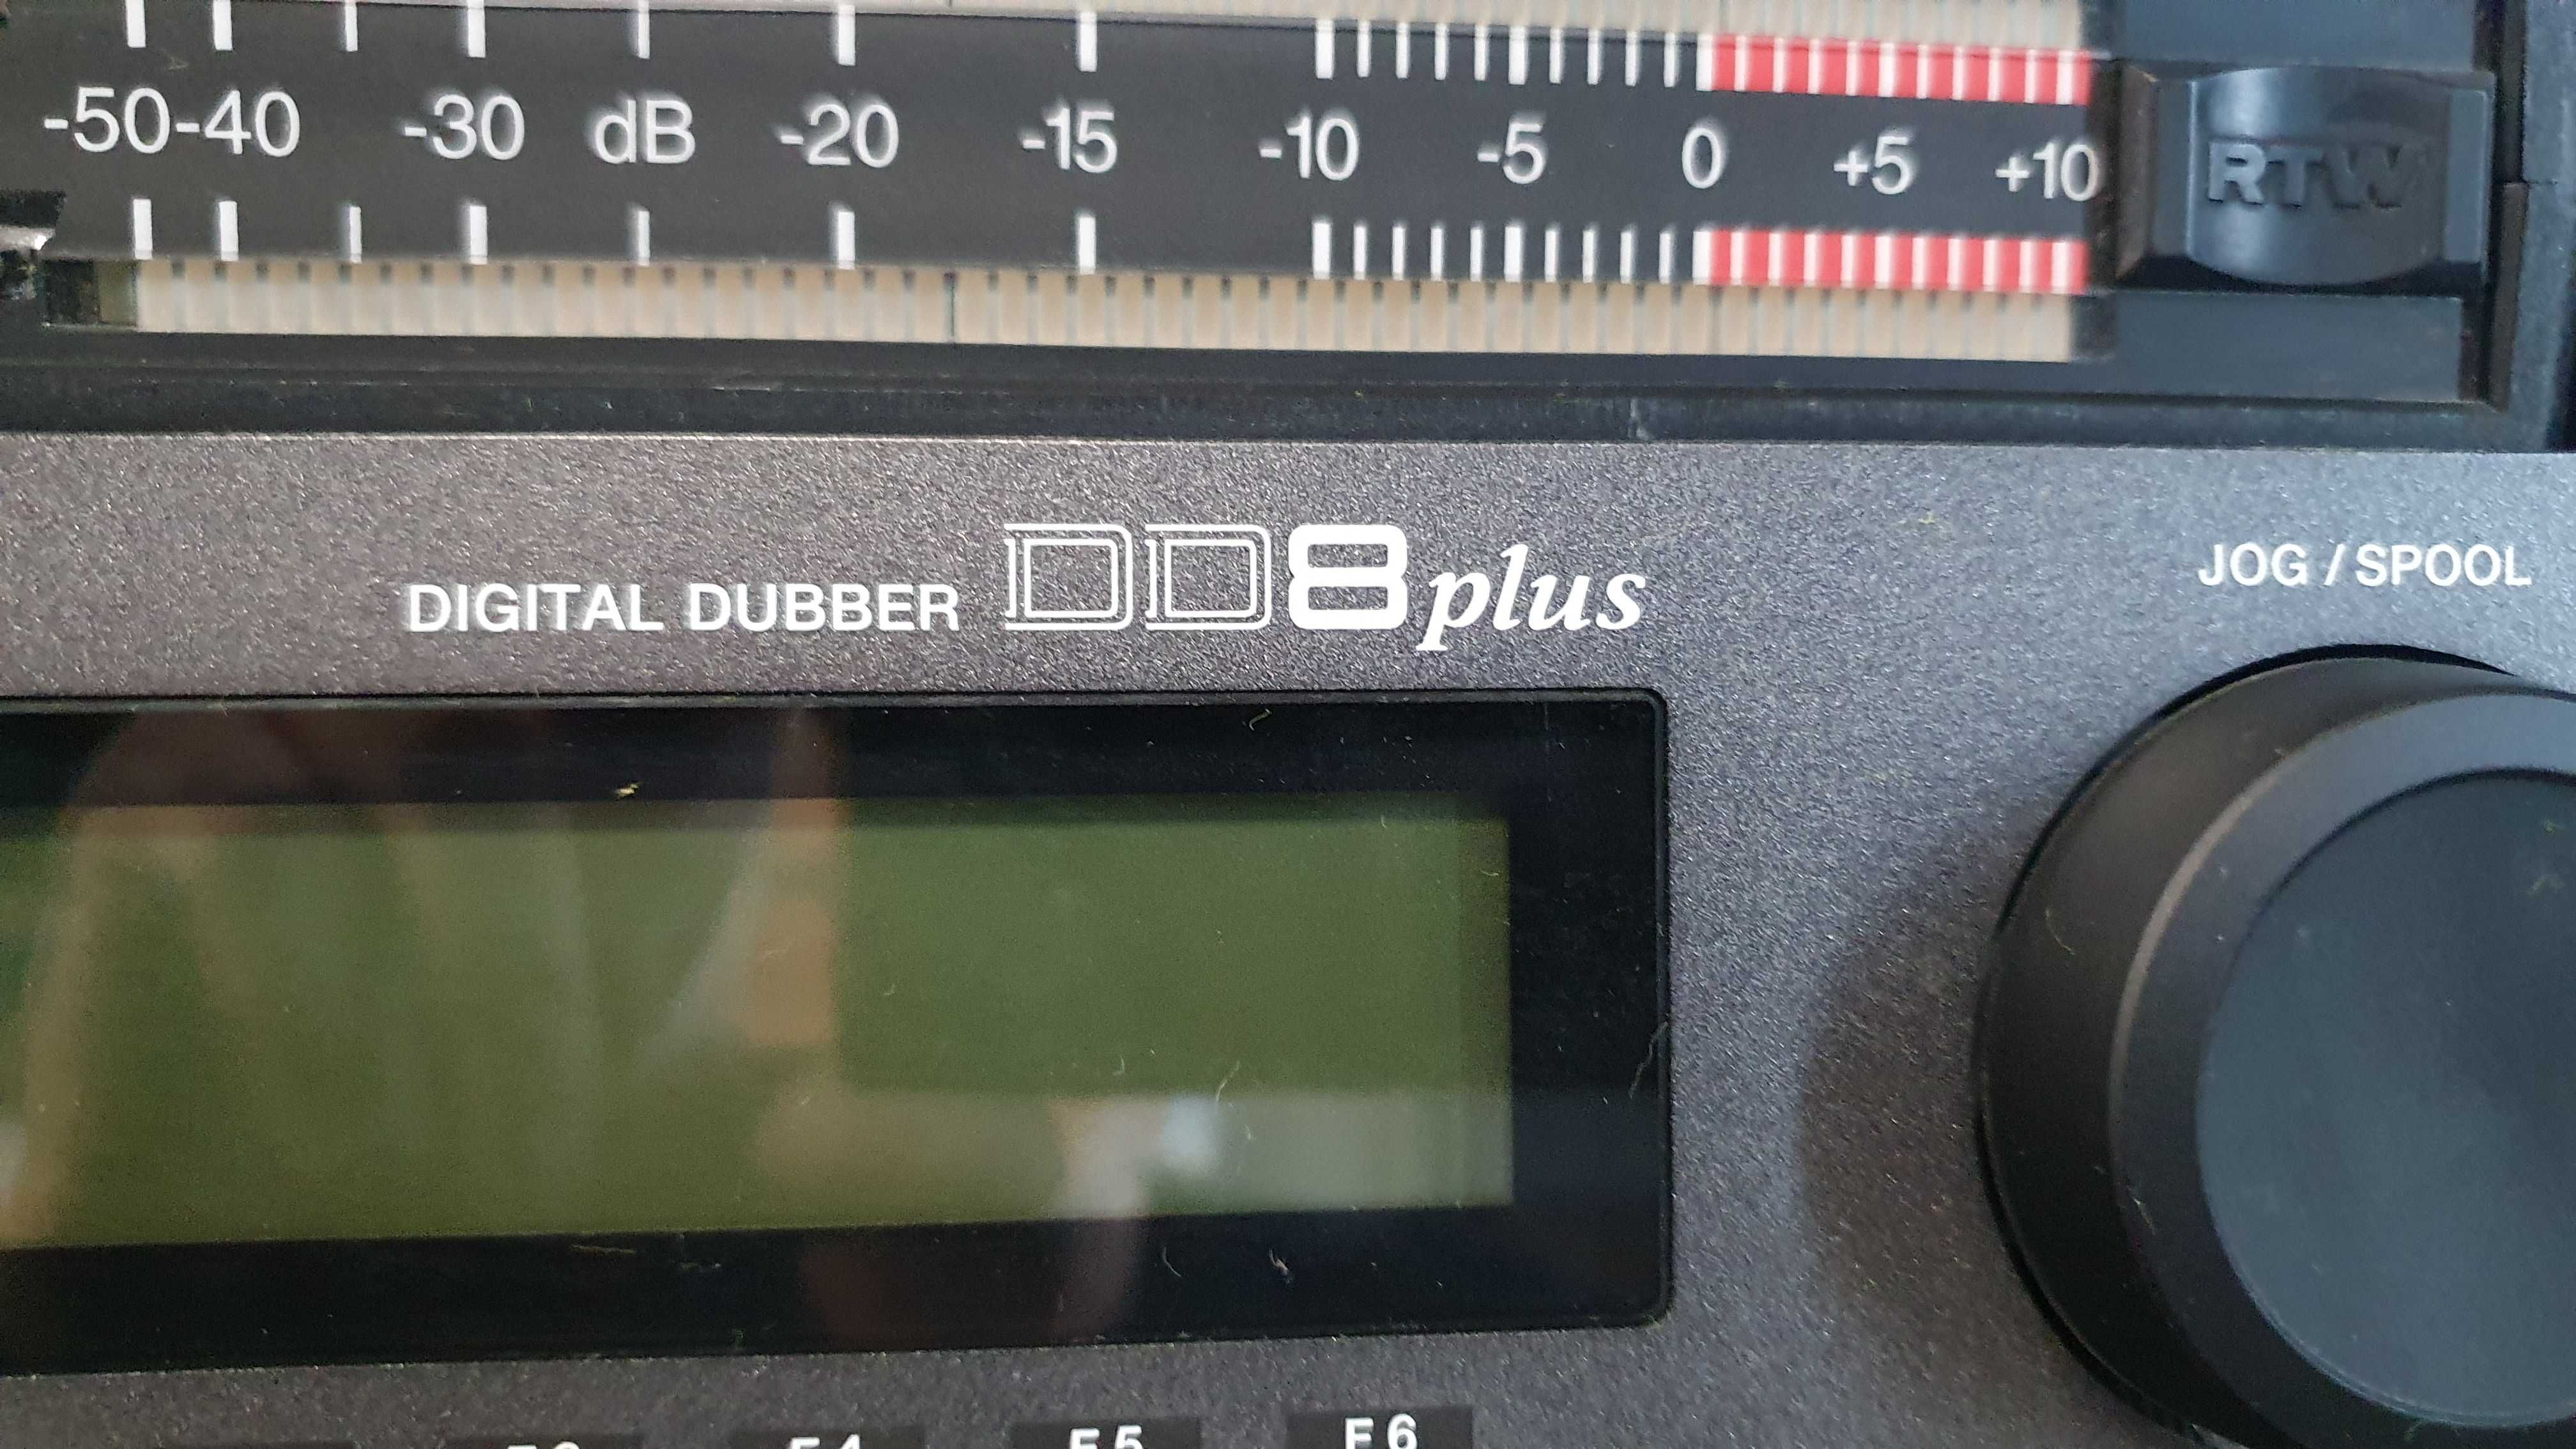 AKAI DD8plus Digital Dubber